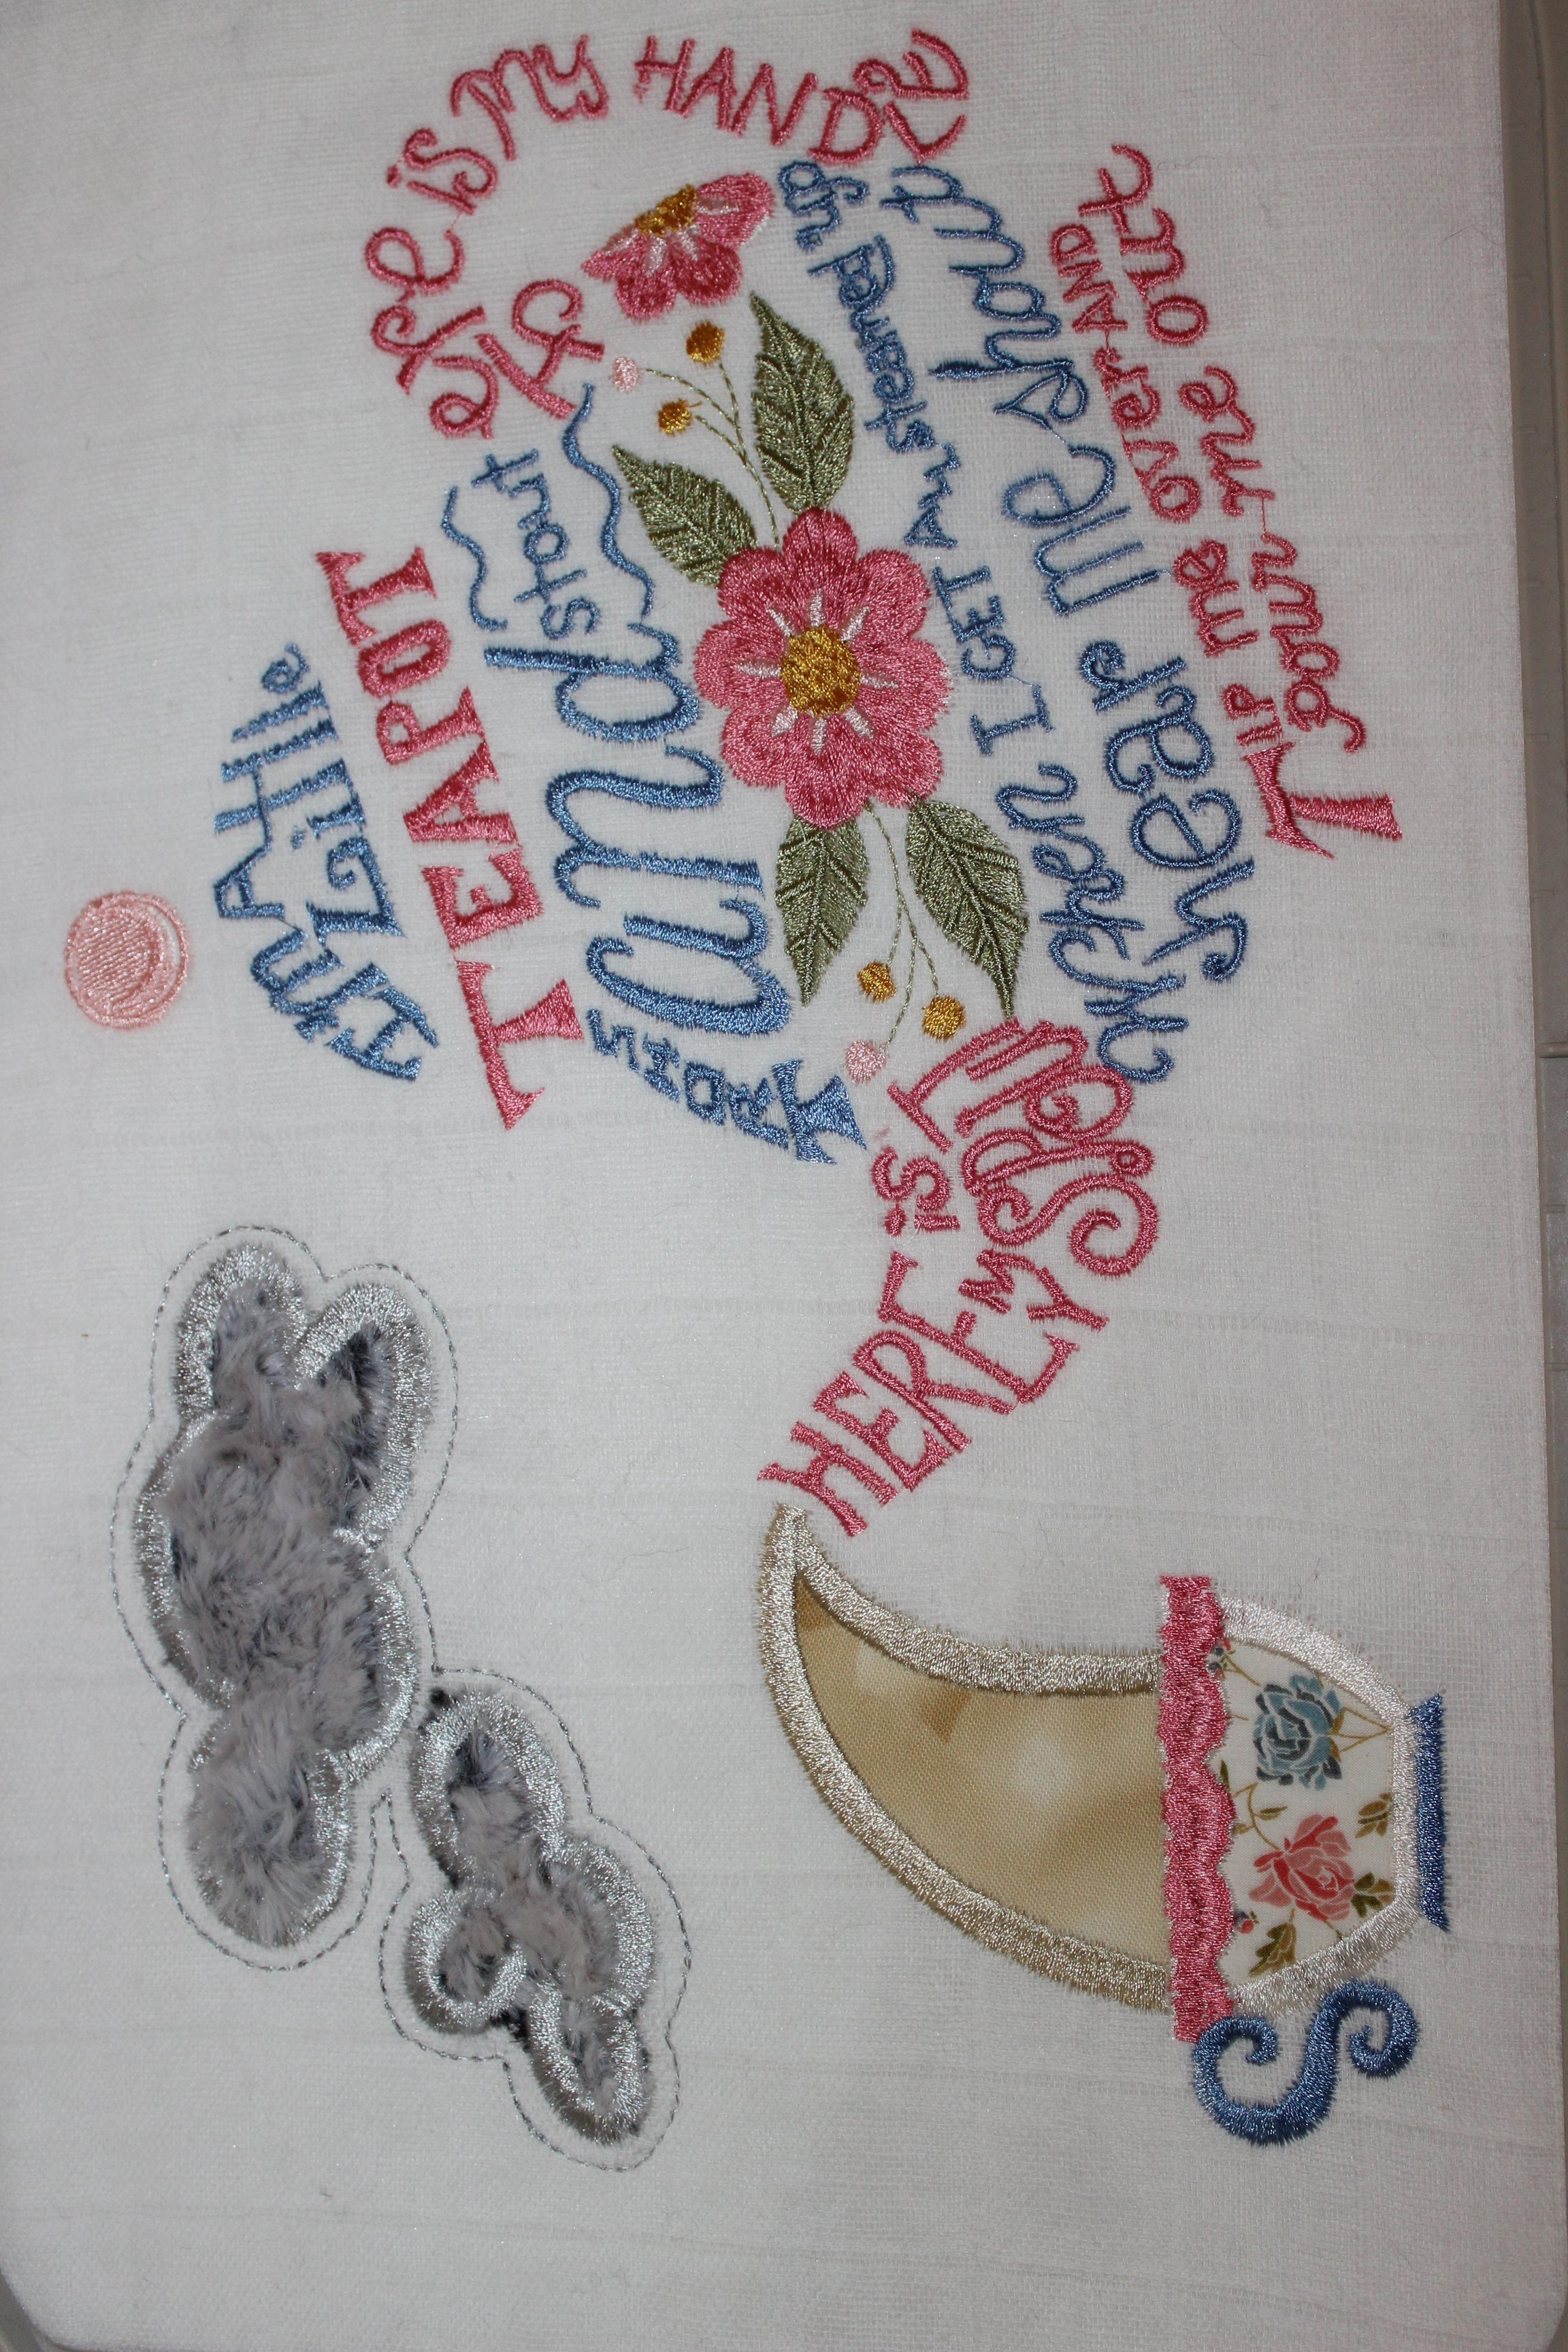 Blog Hop: Modern Folk Embroidery – Kate & Rose Patterns